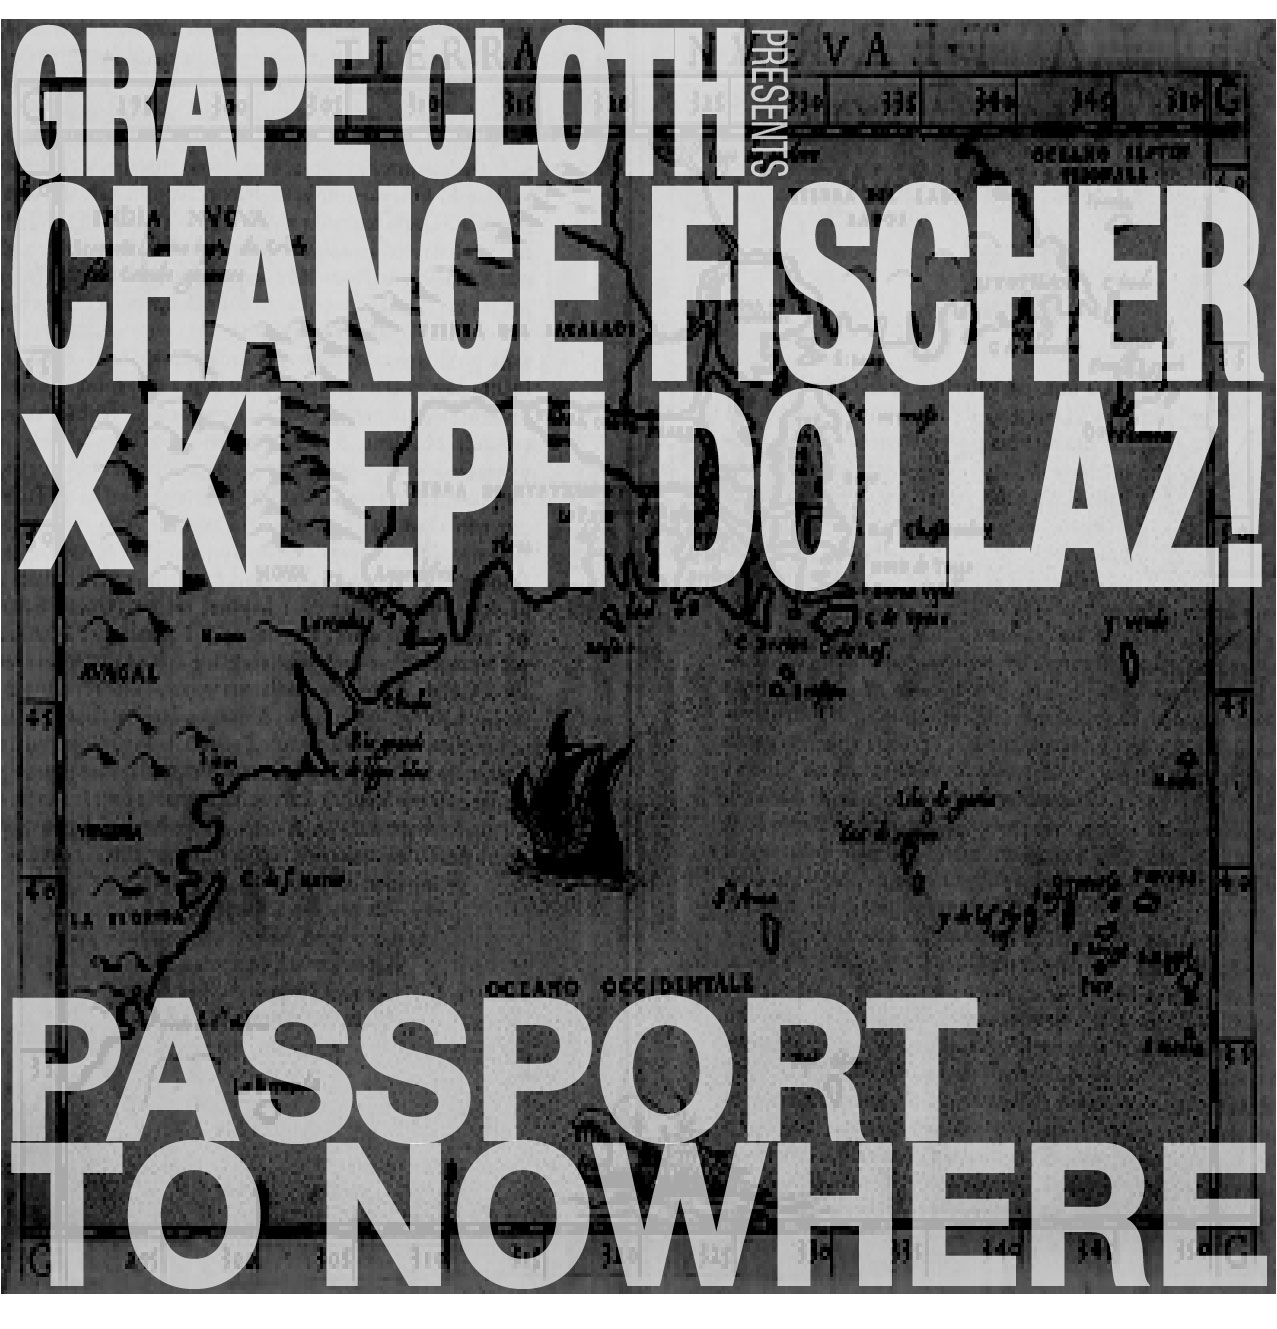 Chance Fischer Passport